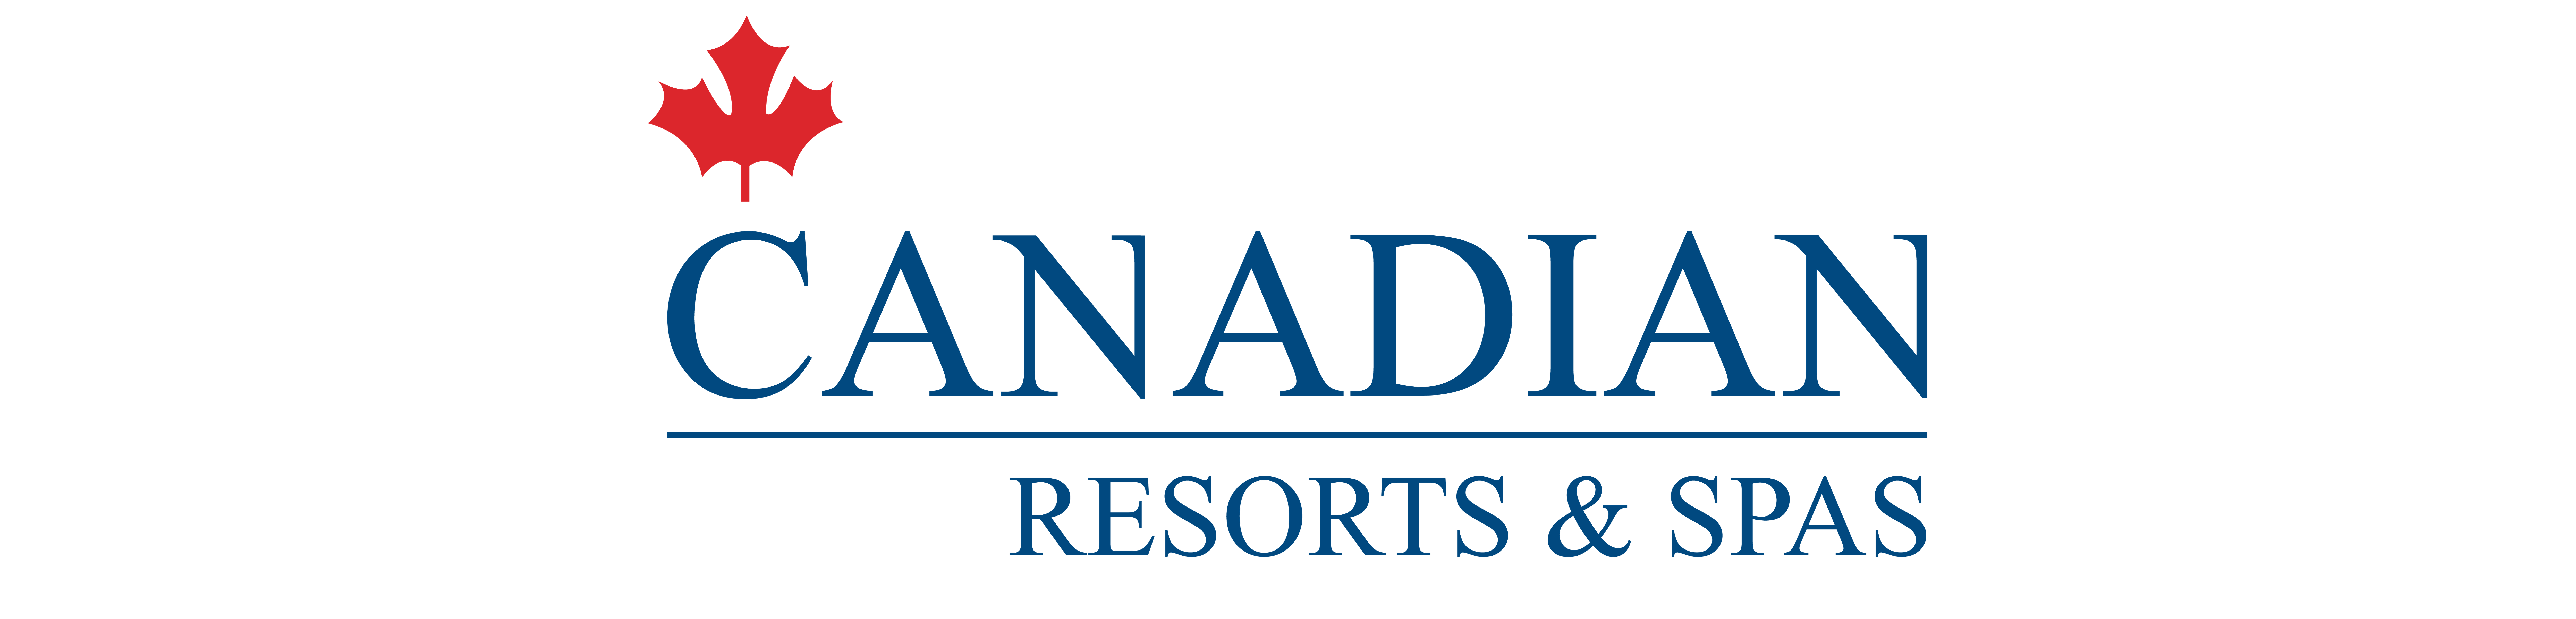 Canadiant Resort